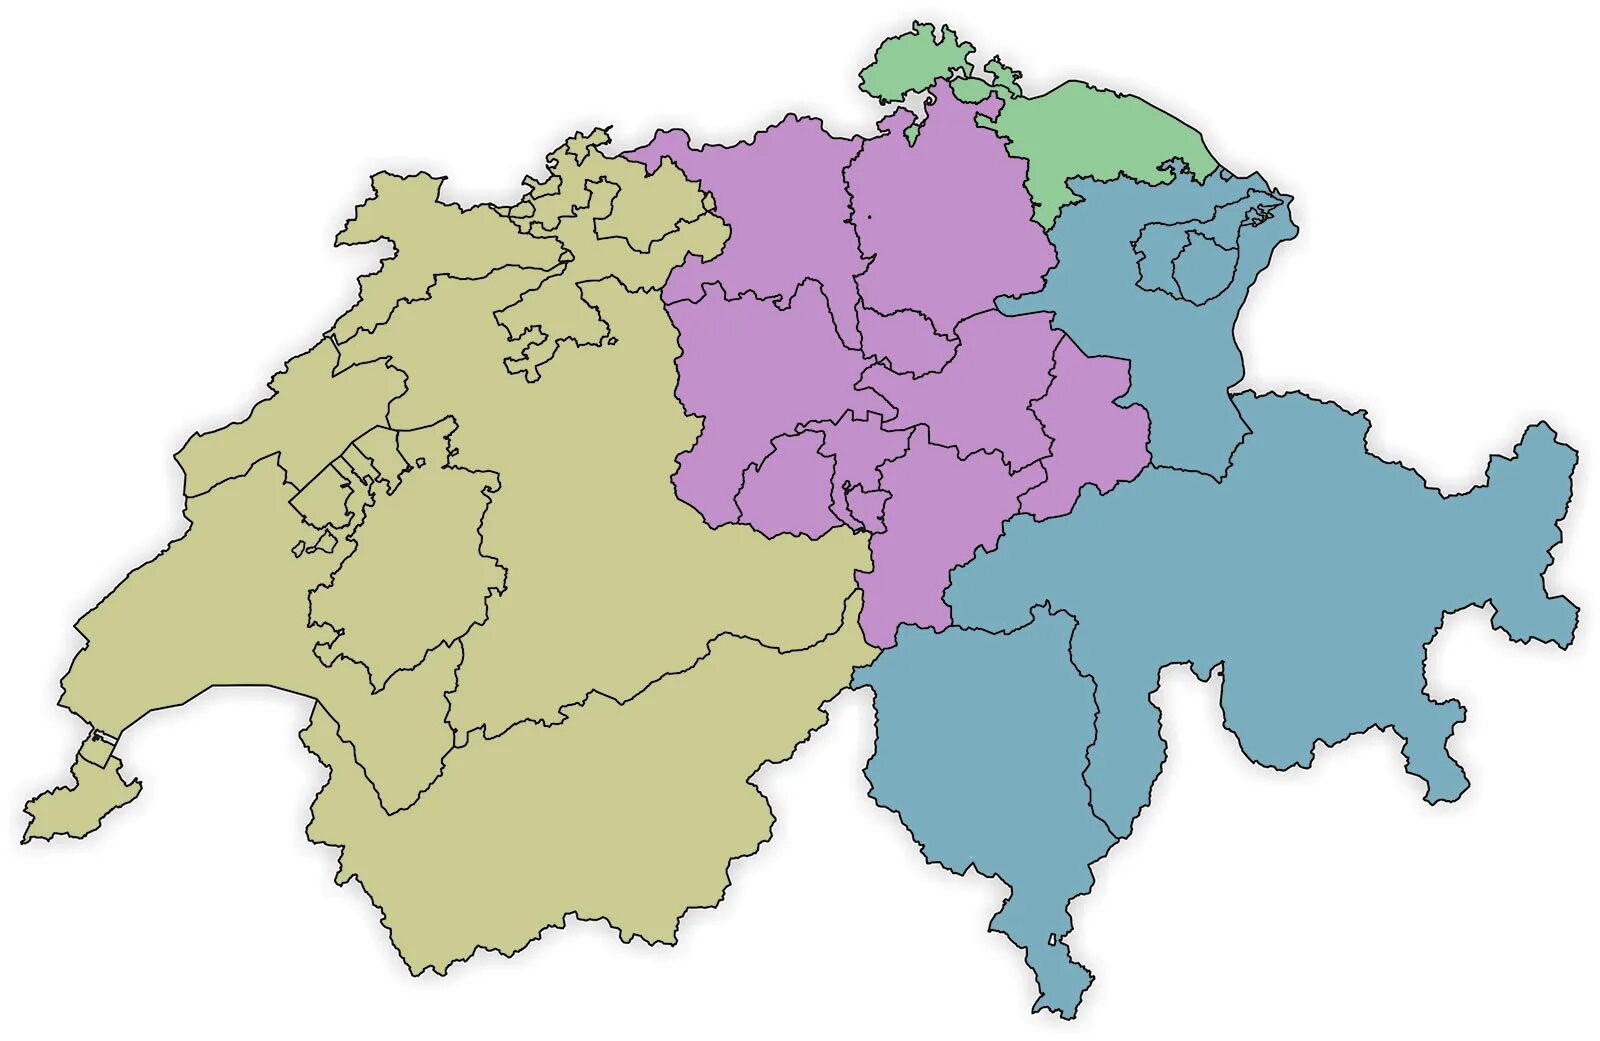 Das schweiz. Немецкоговорящие кантоны Швейцарии на карте. Карта Швейцарии на немецком языке. Schweiz карта. Контурная карта Швейцарии.